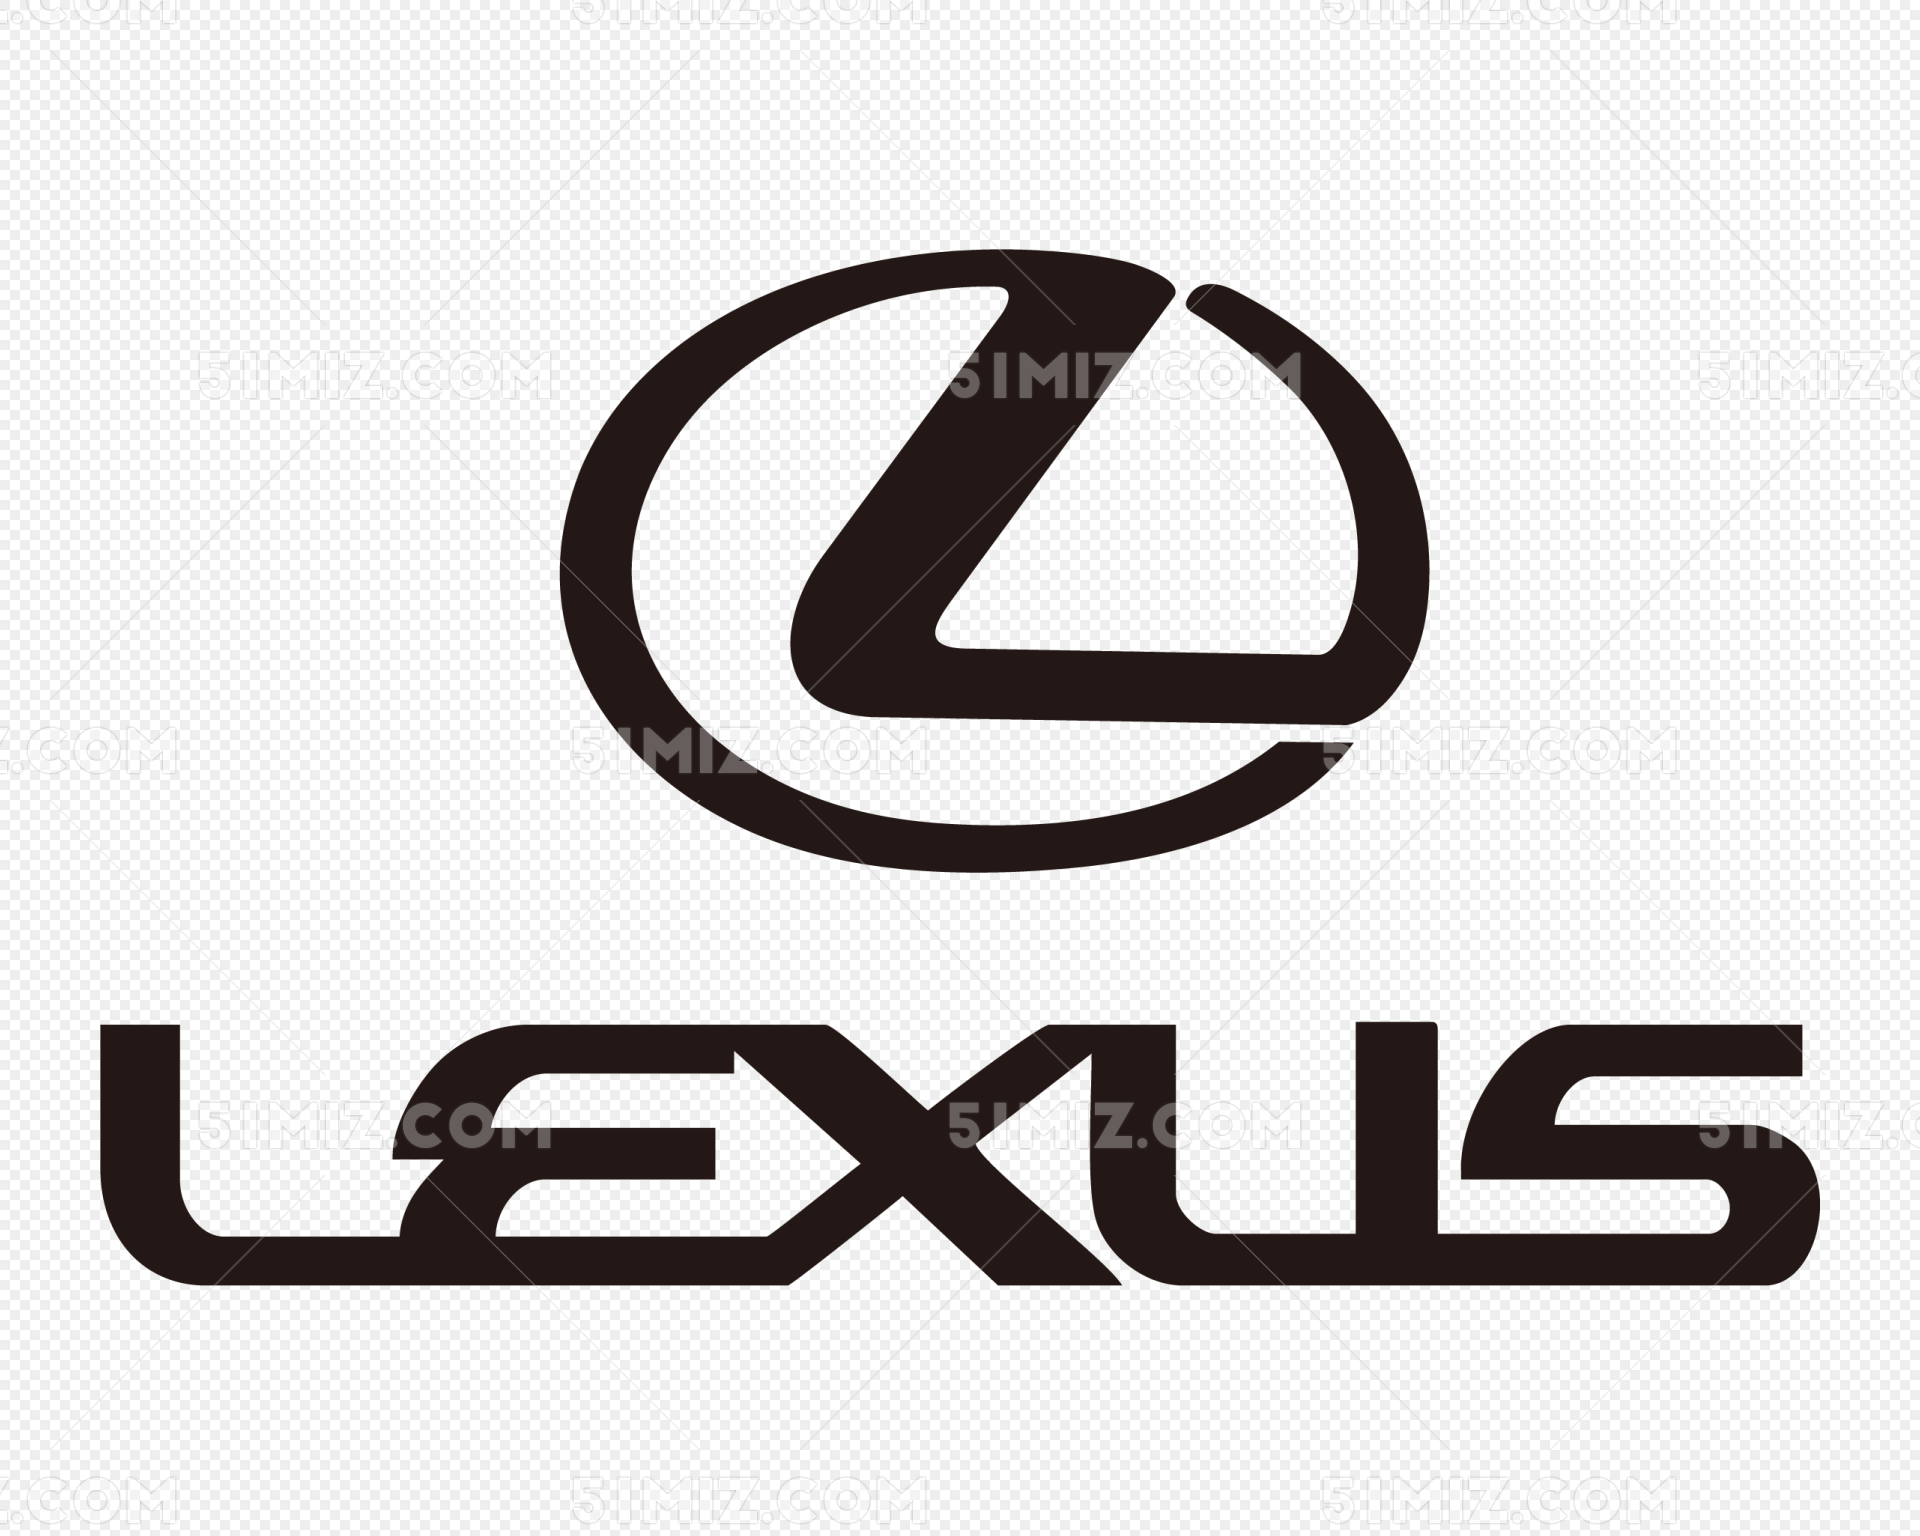 雷克萨斯车标图片logo - 车标 - 易图网